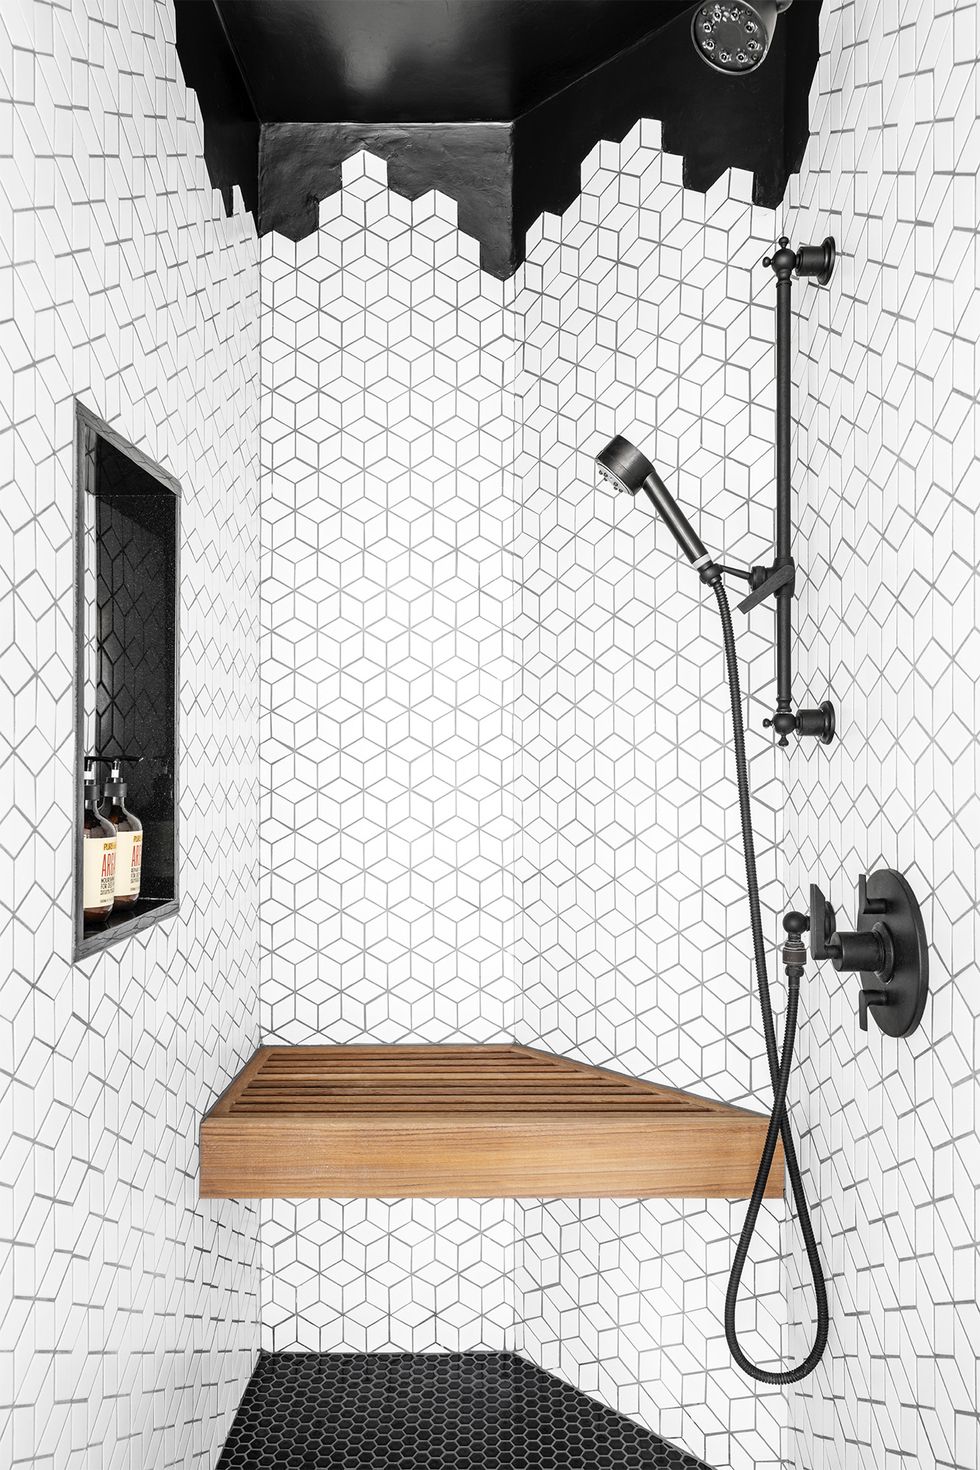 Bathroom Storage Ideas For Small Bathrooms • OhMeOhMy Blog